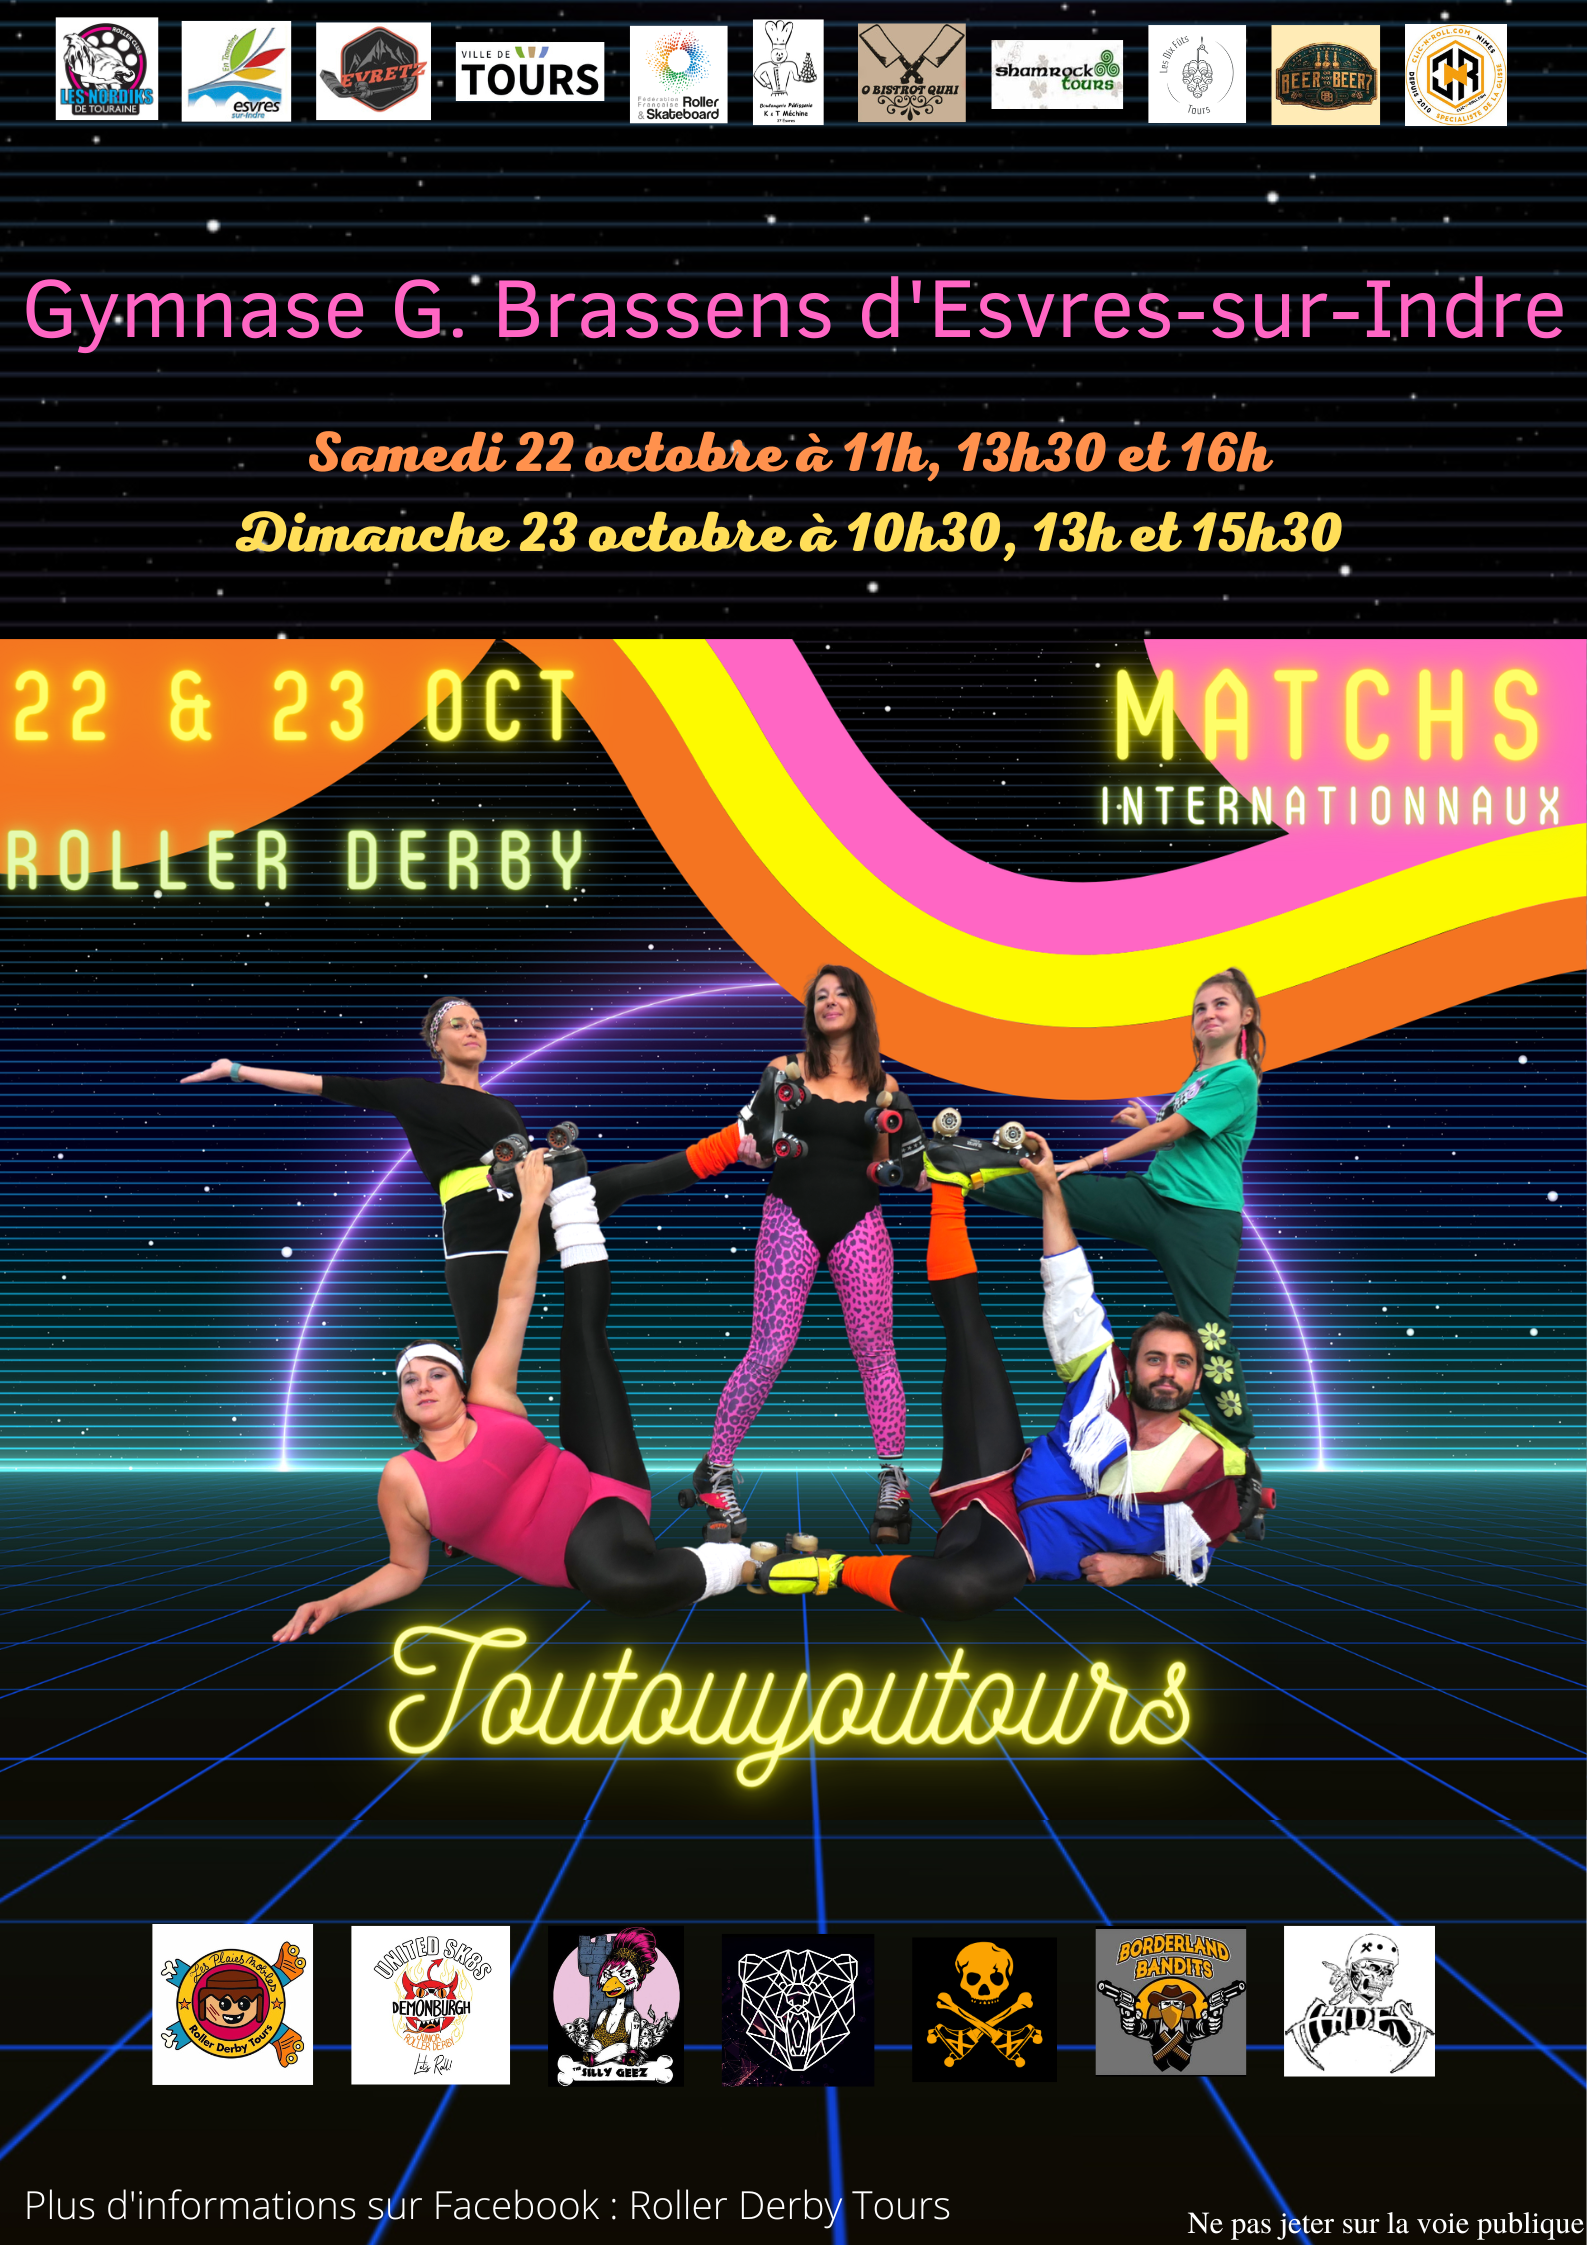 Matchs internationaux de roller derby au gymnase d'Esvres-sur-Indre en partenariat avec Evretz